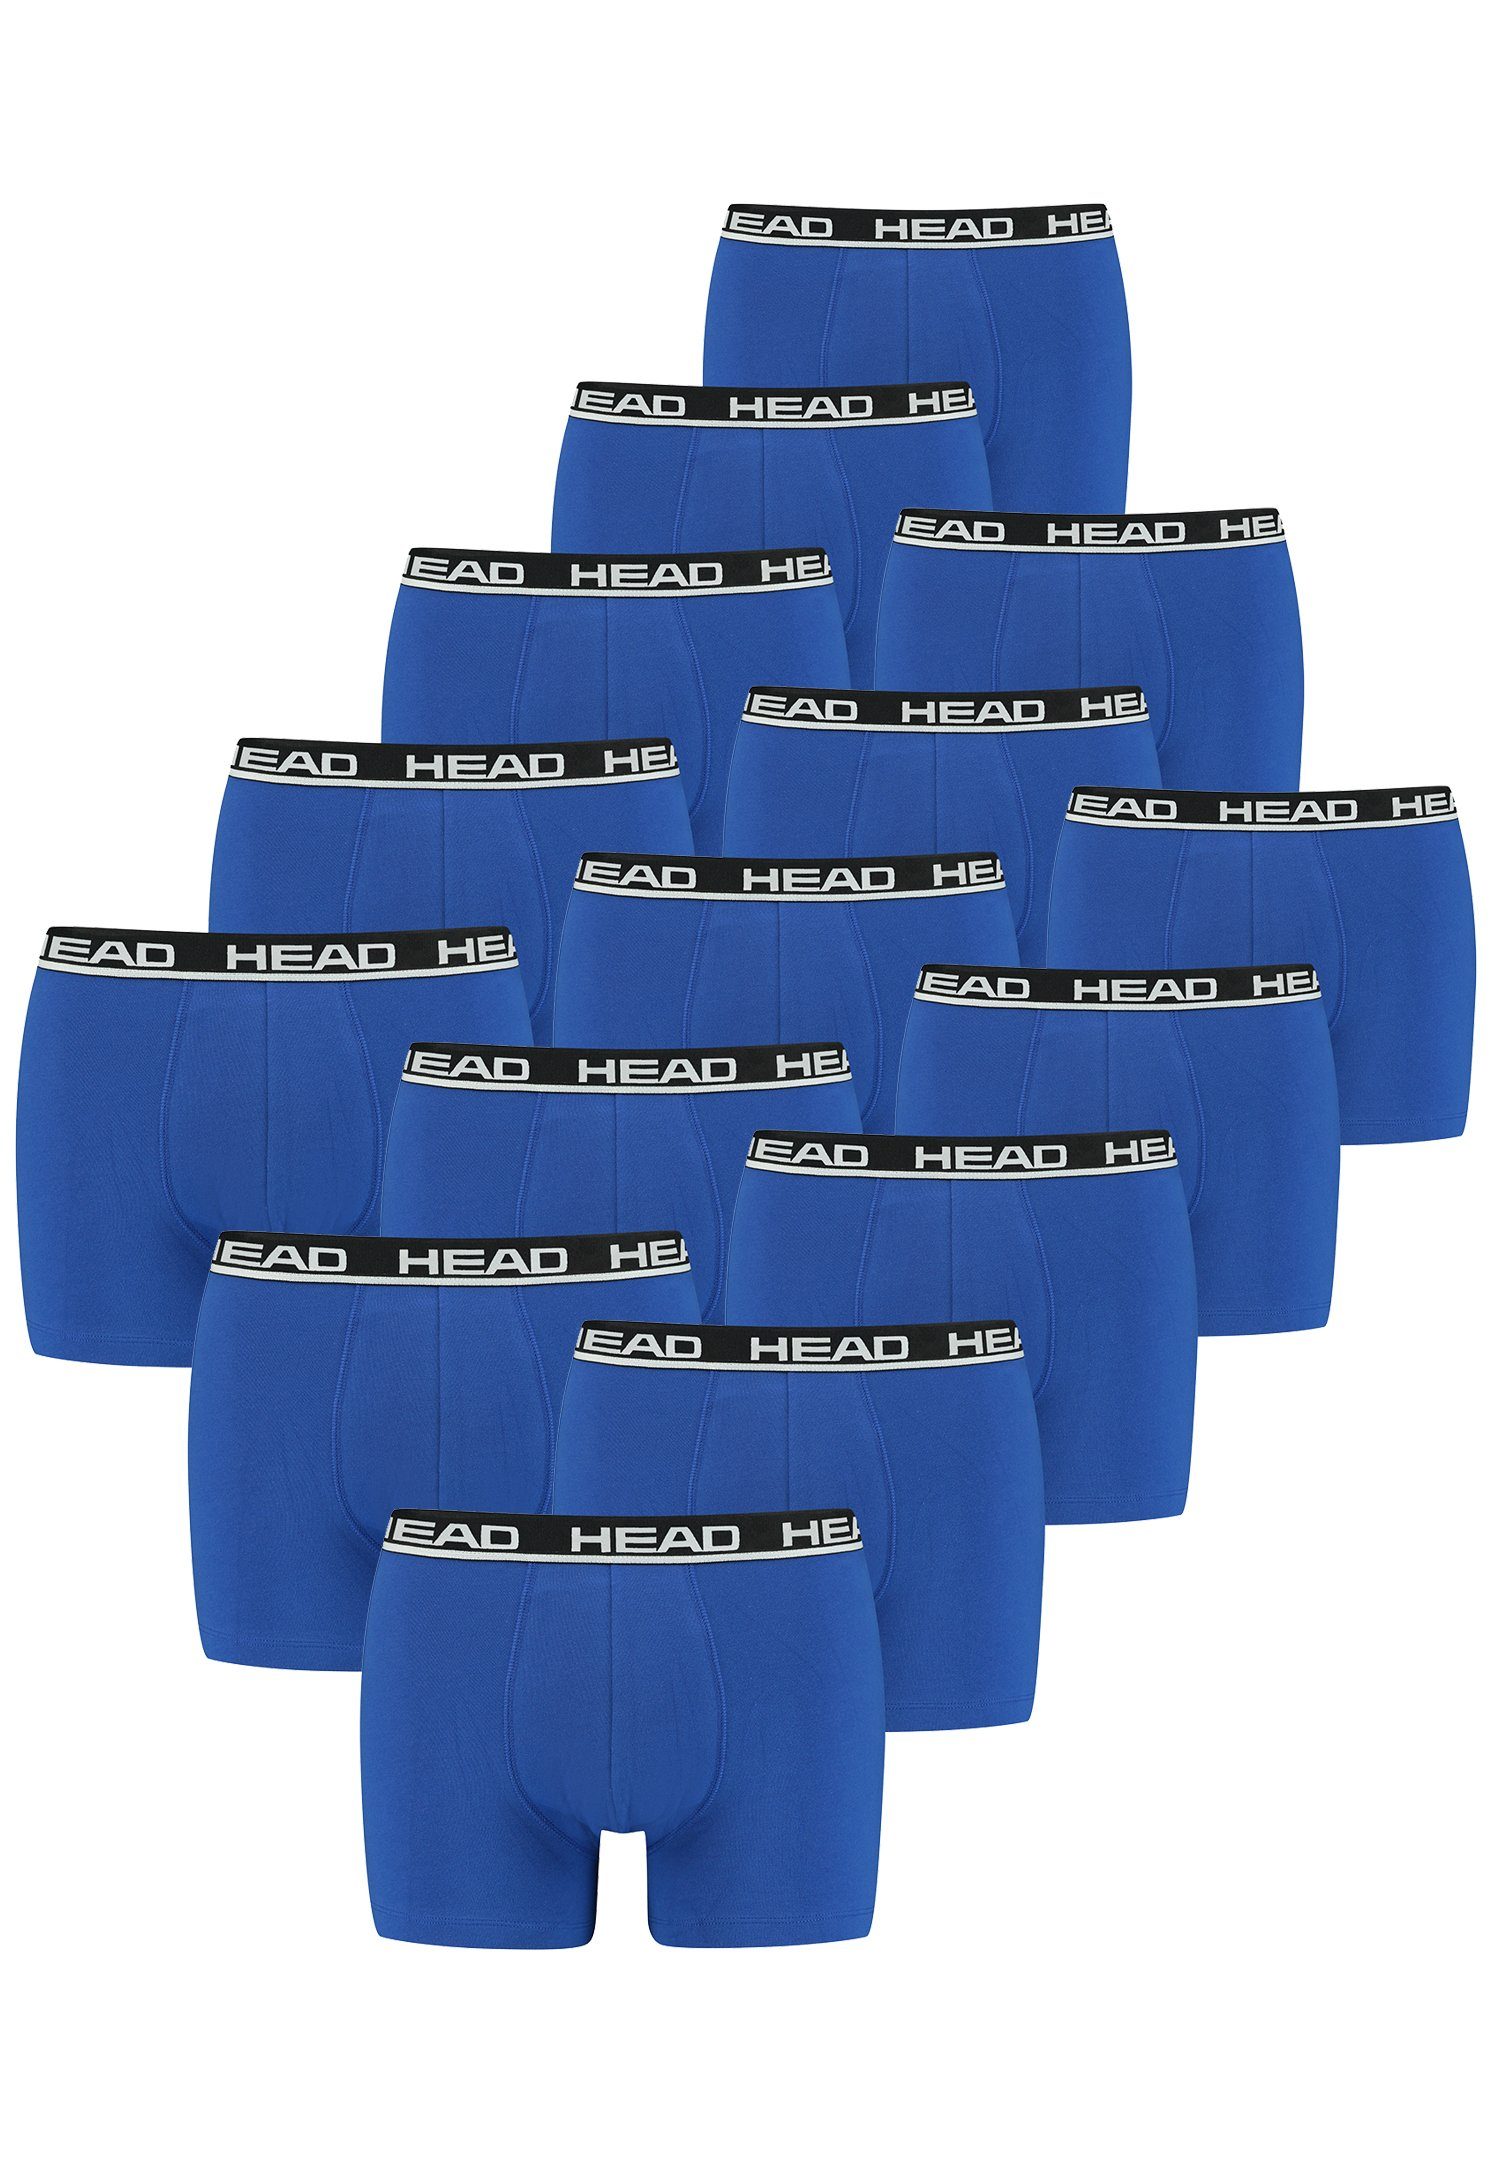 Boxershorts 15 Head Black Boxer 15er-Pack) 006 - Pack Blue er / (15-St.,